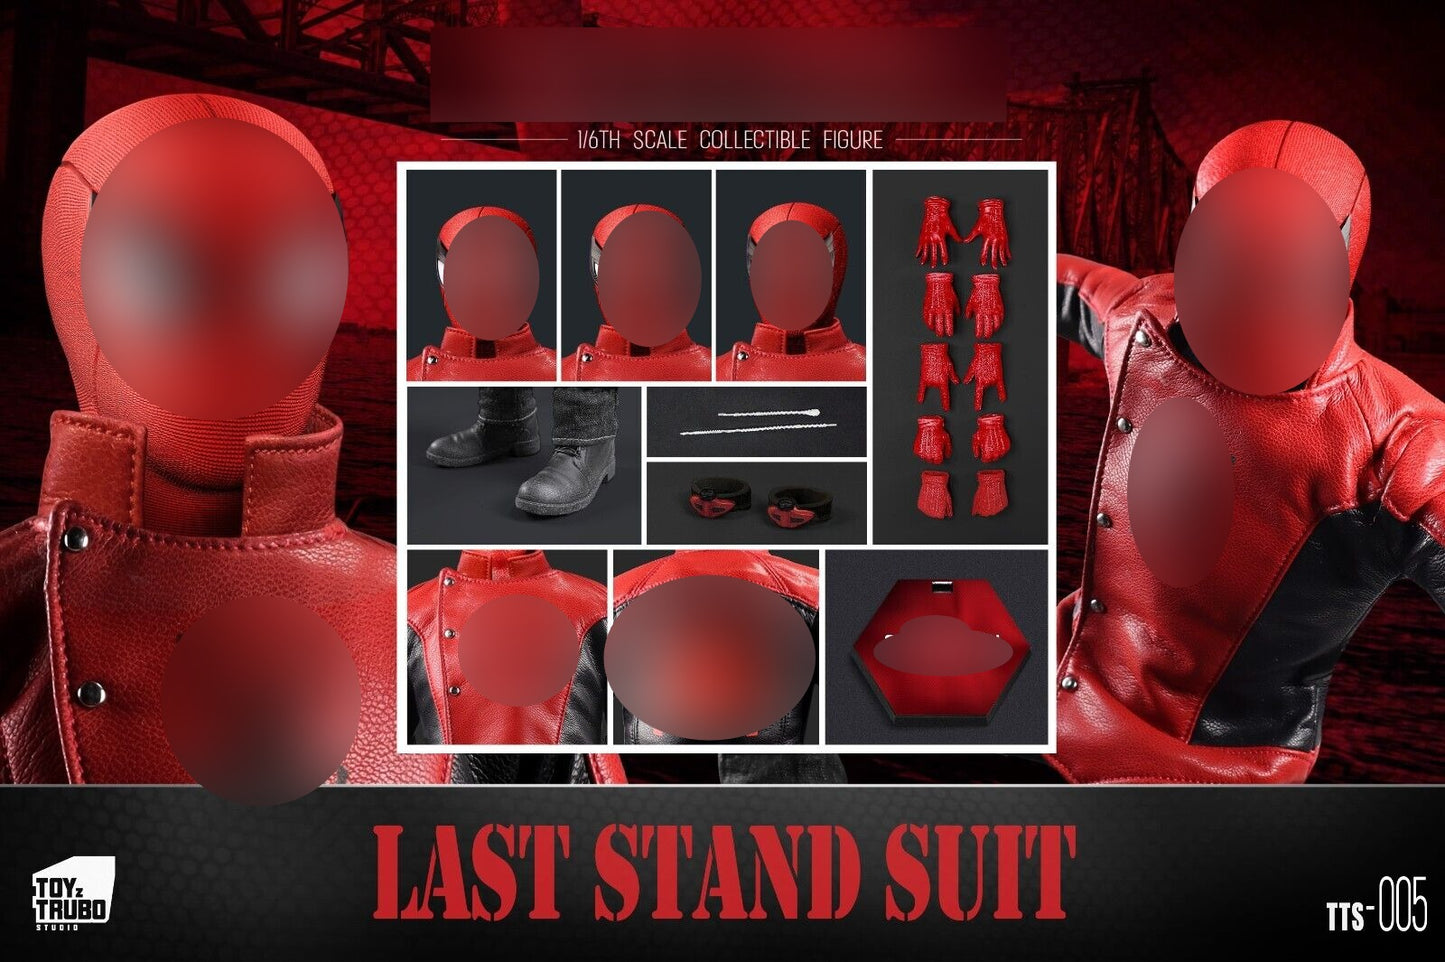 Pedido Figura Last Stand Suit marca Toyz Trubo Studio TTS-005 escala 1/6